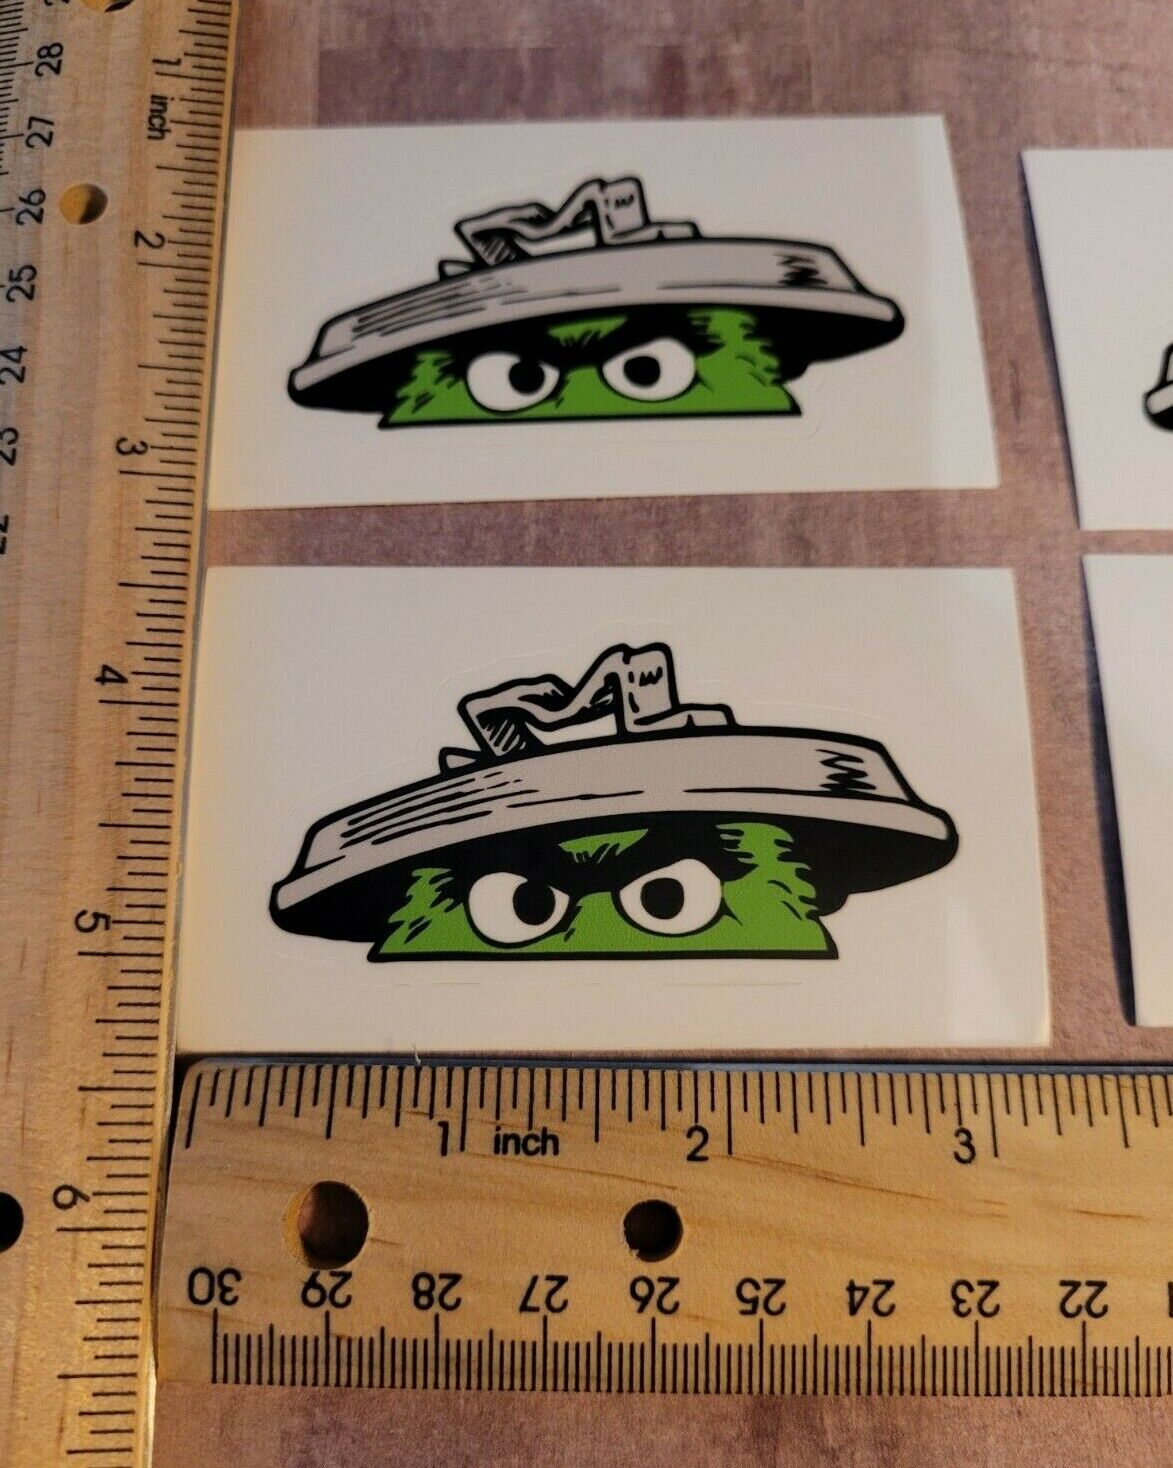 2 Sticker Pack Oscar The Grouch Diecut Drift Sticker made in the USA